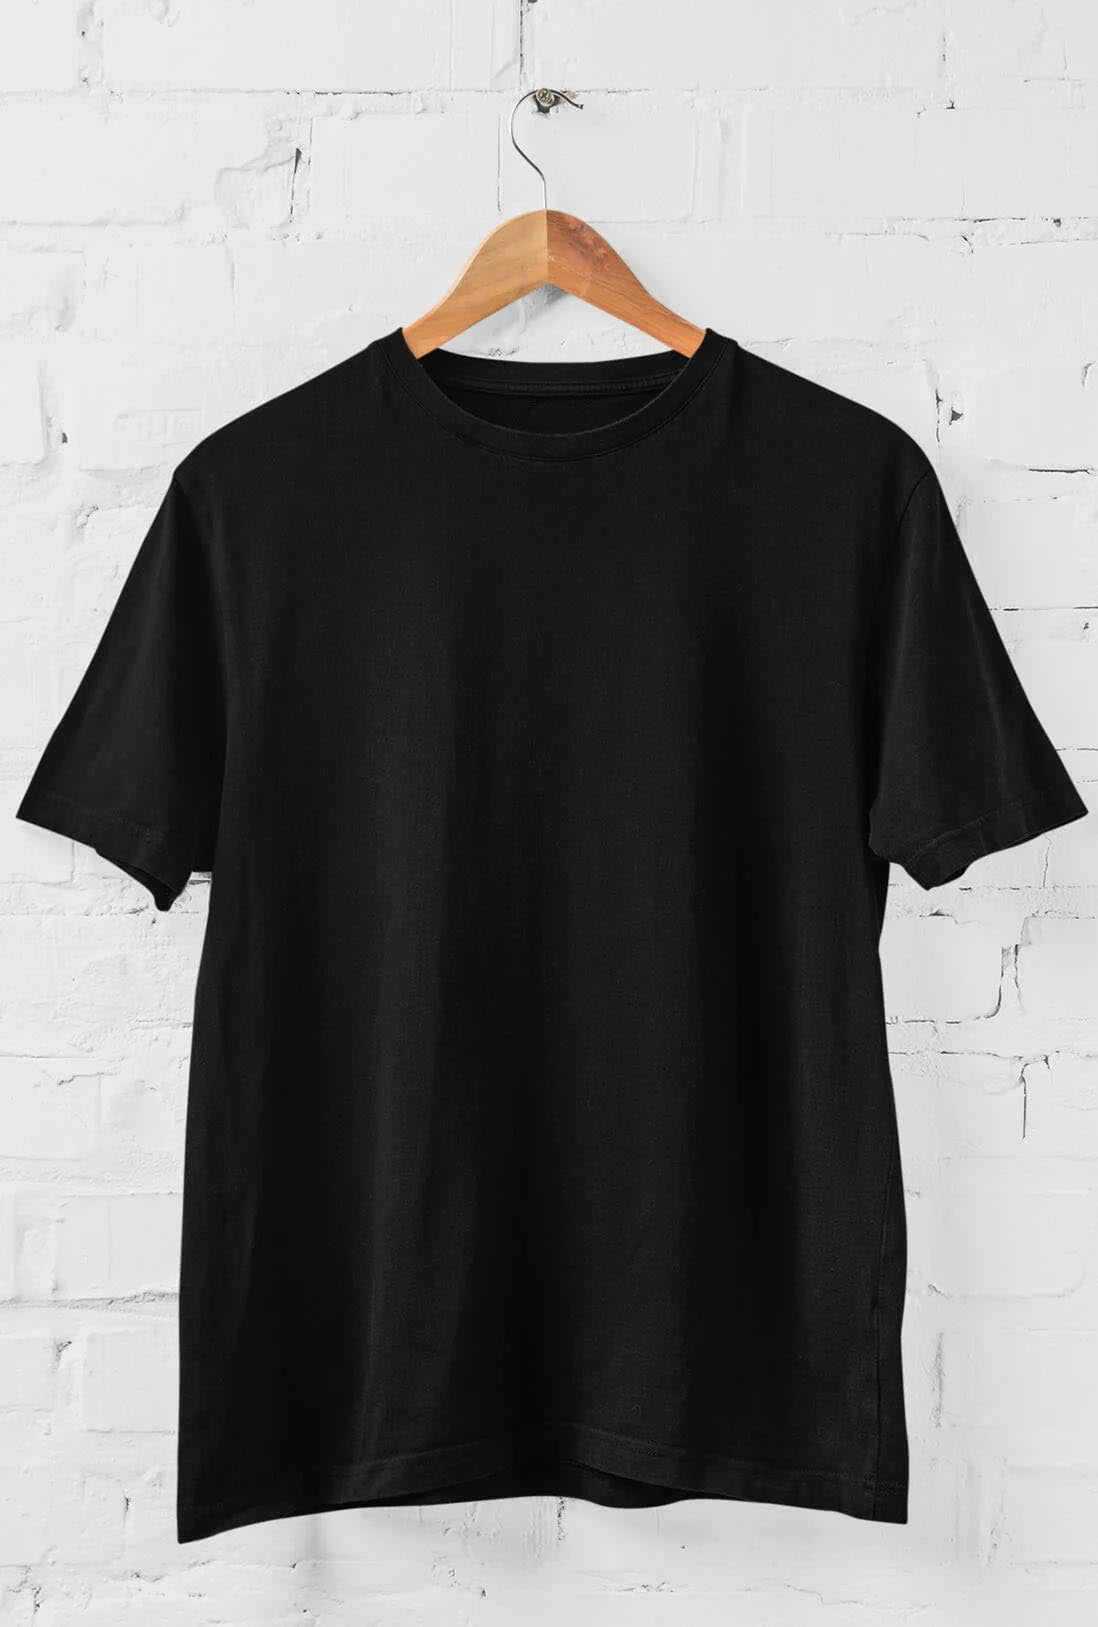 Men's Black Cotton T-Shirt